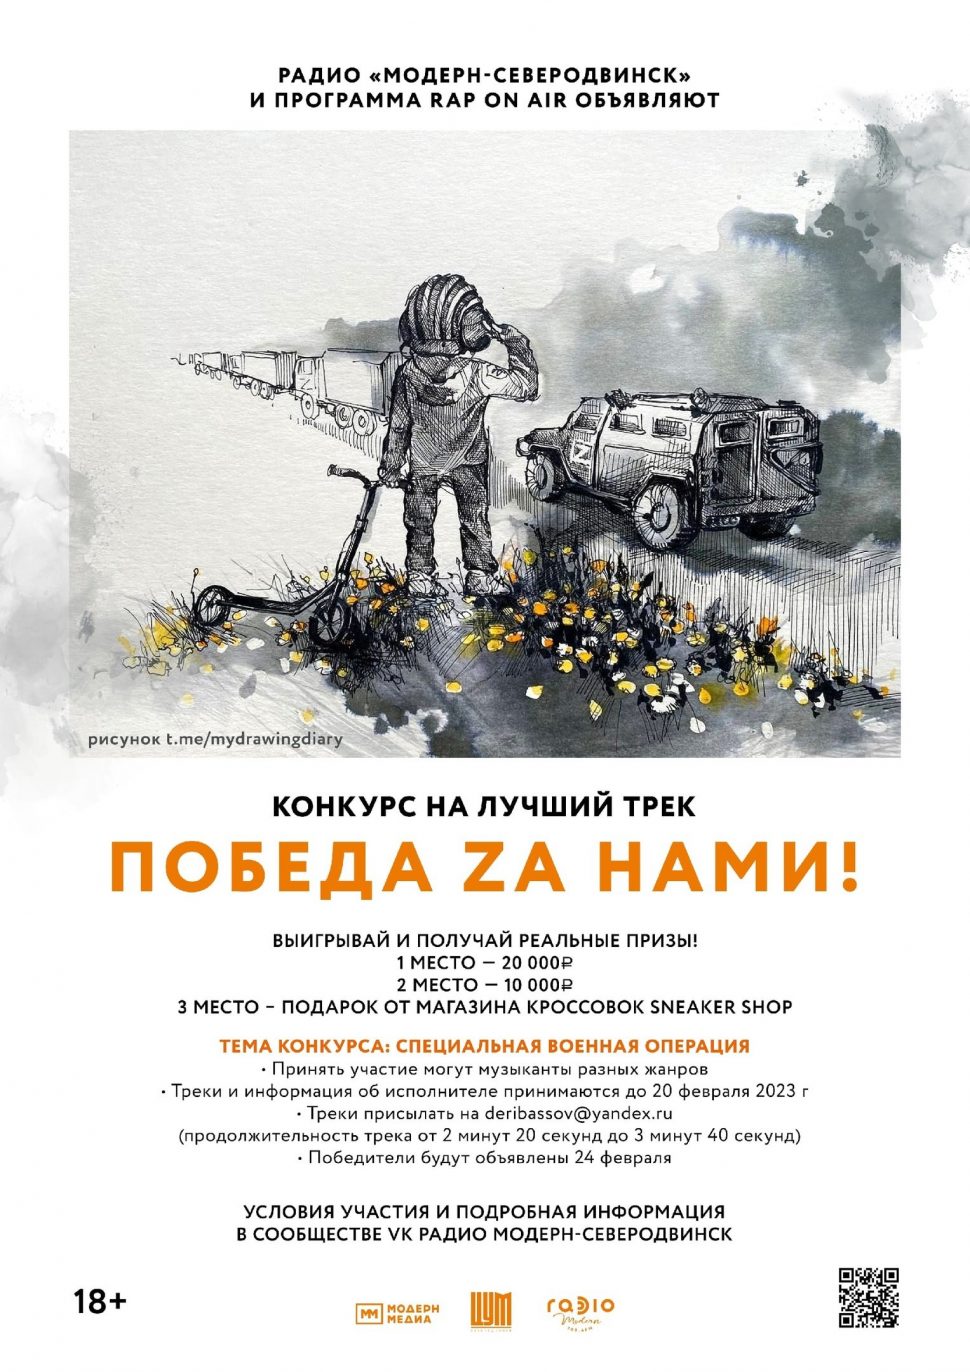 Радио «Модерн-Северодвинск» объявило о творческом конкурсе «Победа Zа нами!»